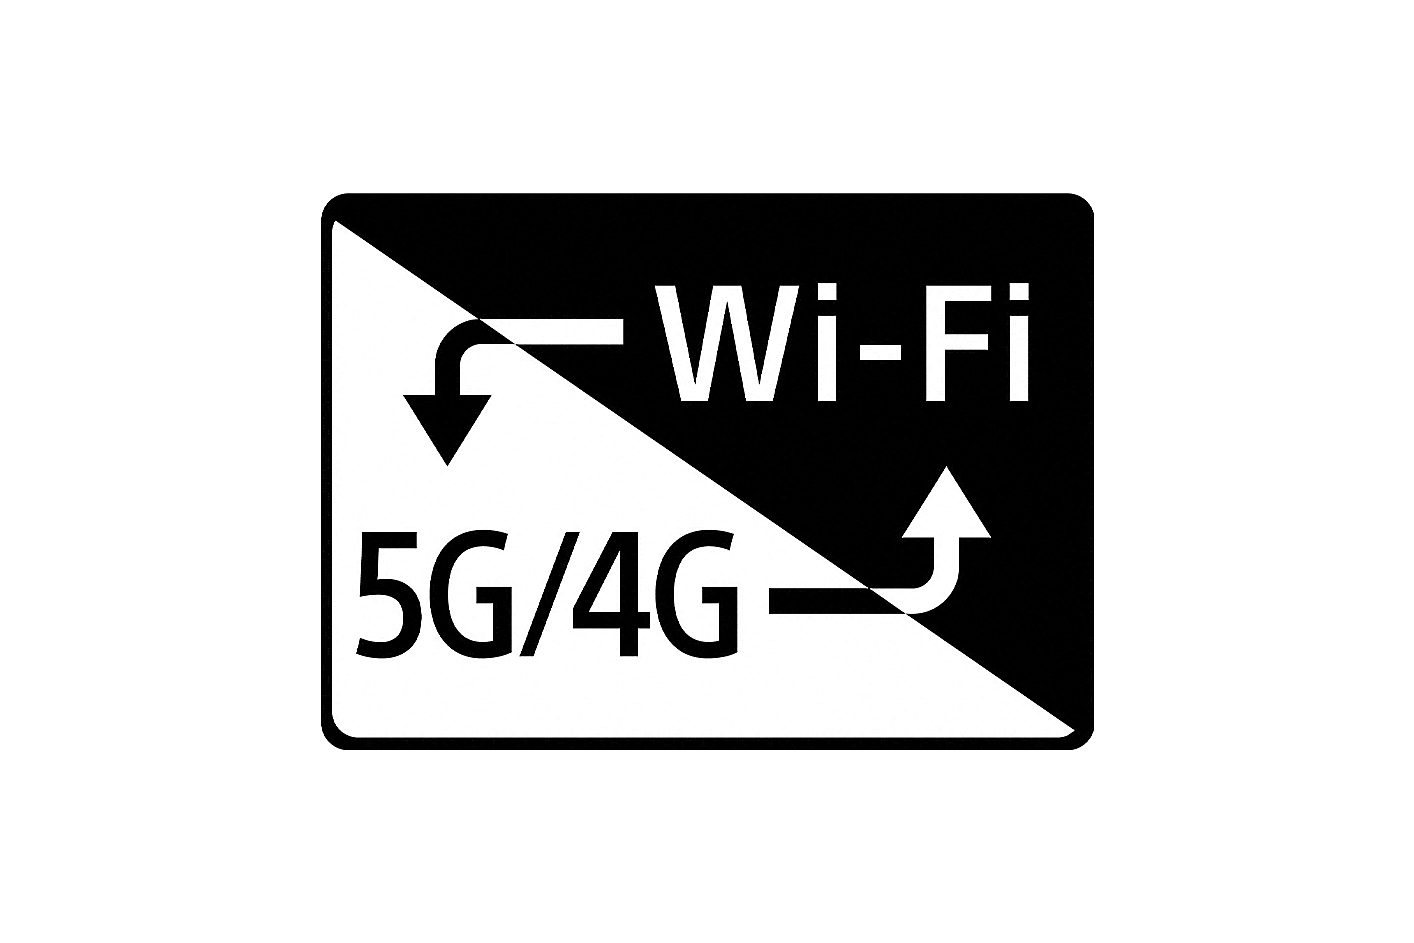 Image du Wi-Fi et de la 5G/4G avec des flèches renvoyant de l'une à l'autre